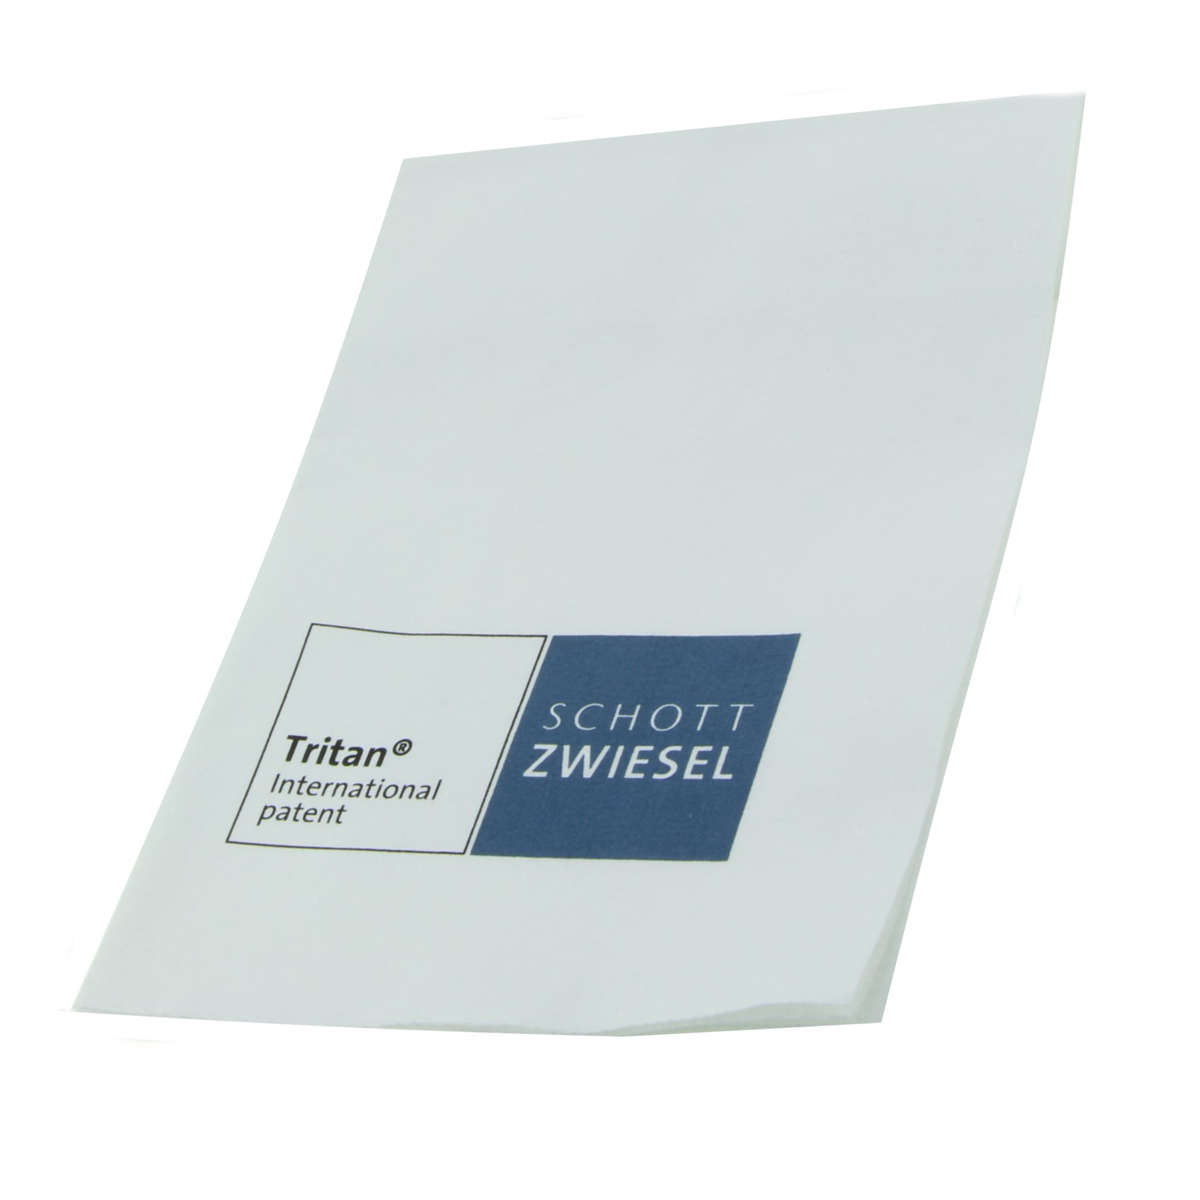 Glaspoliertuch aus Microfaser von Schott Zwiesel